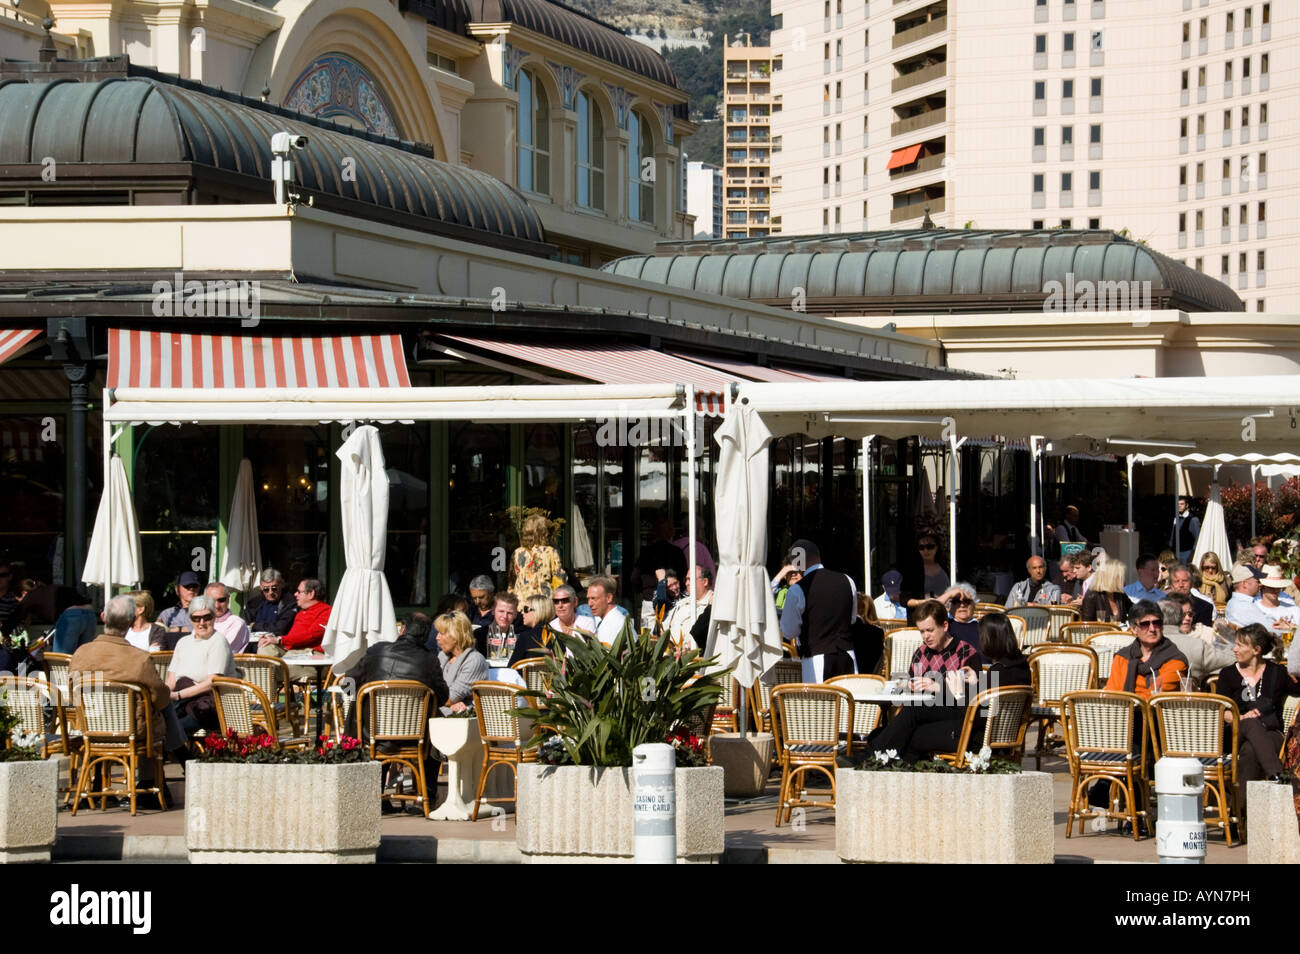 Cafe de Paris in Monte Carlo, Monaco Stock Photo